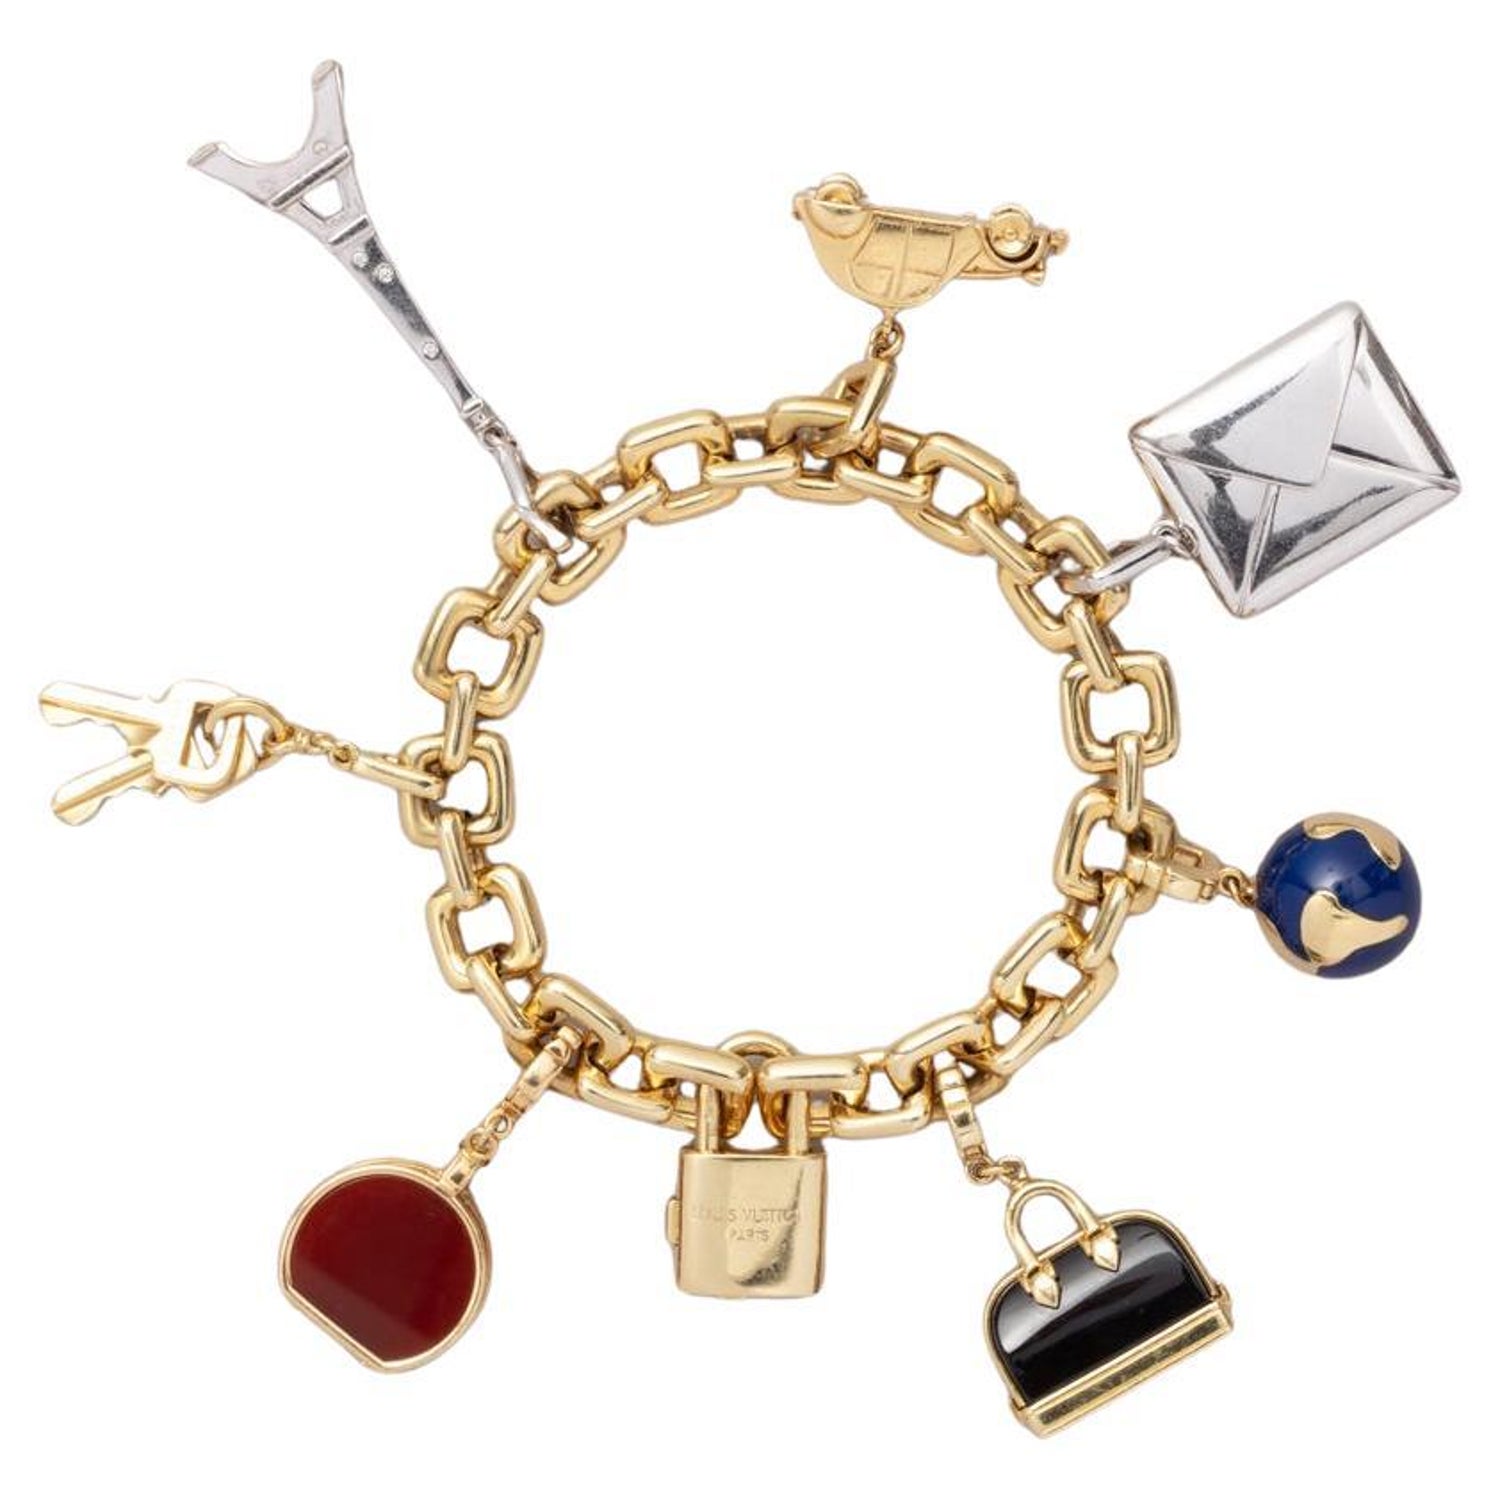 Louis Vuitton Canvas Bracelet for Sale in Online Auctions